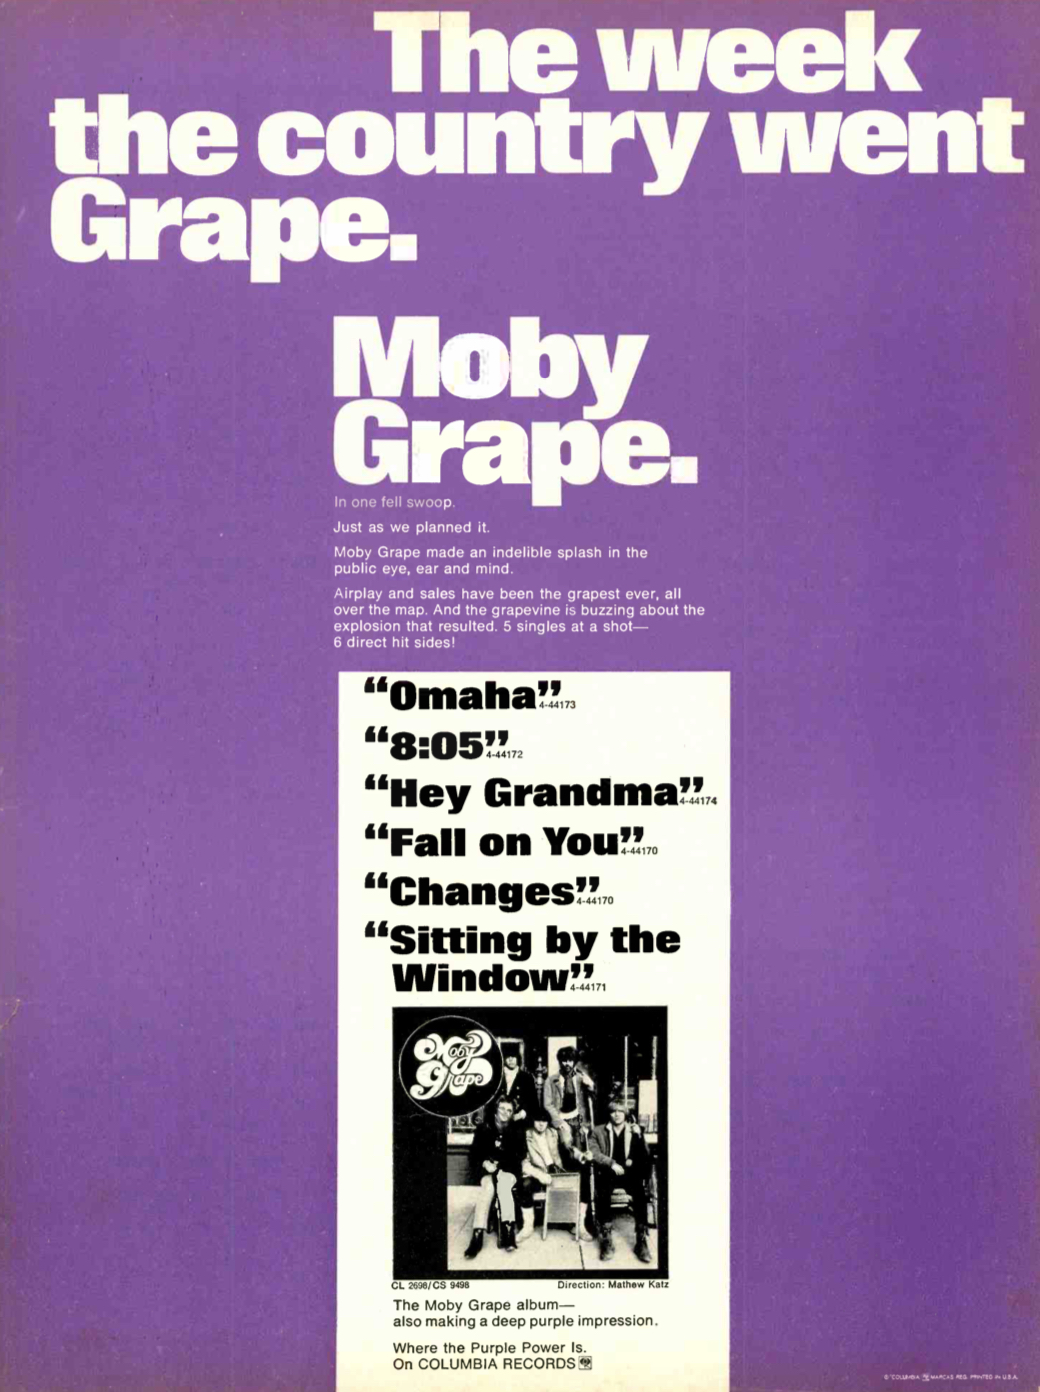 Moby Grape - Wikipedia